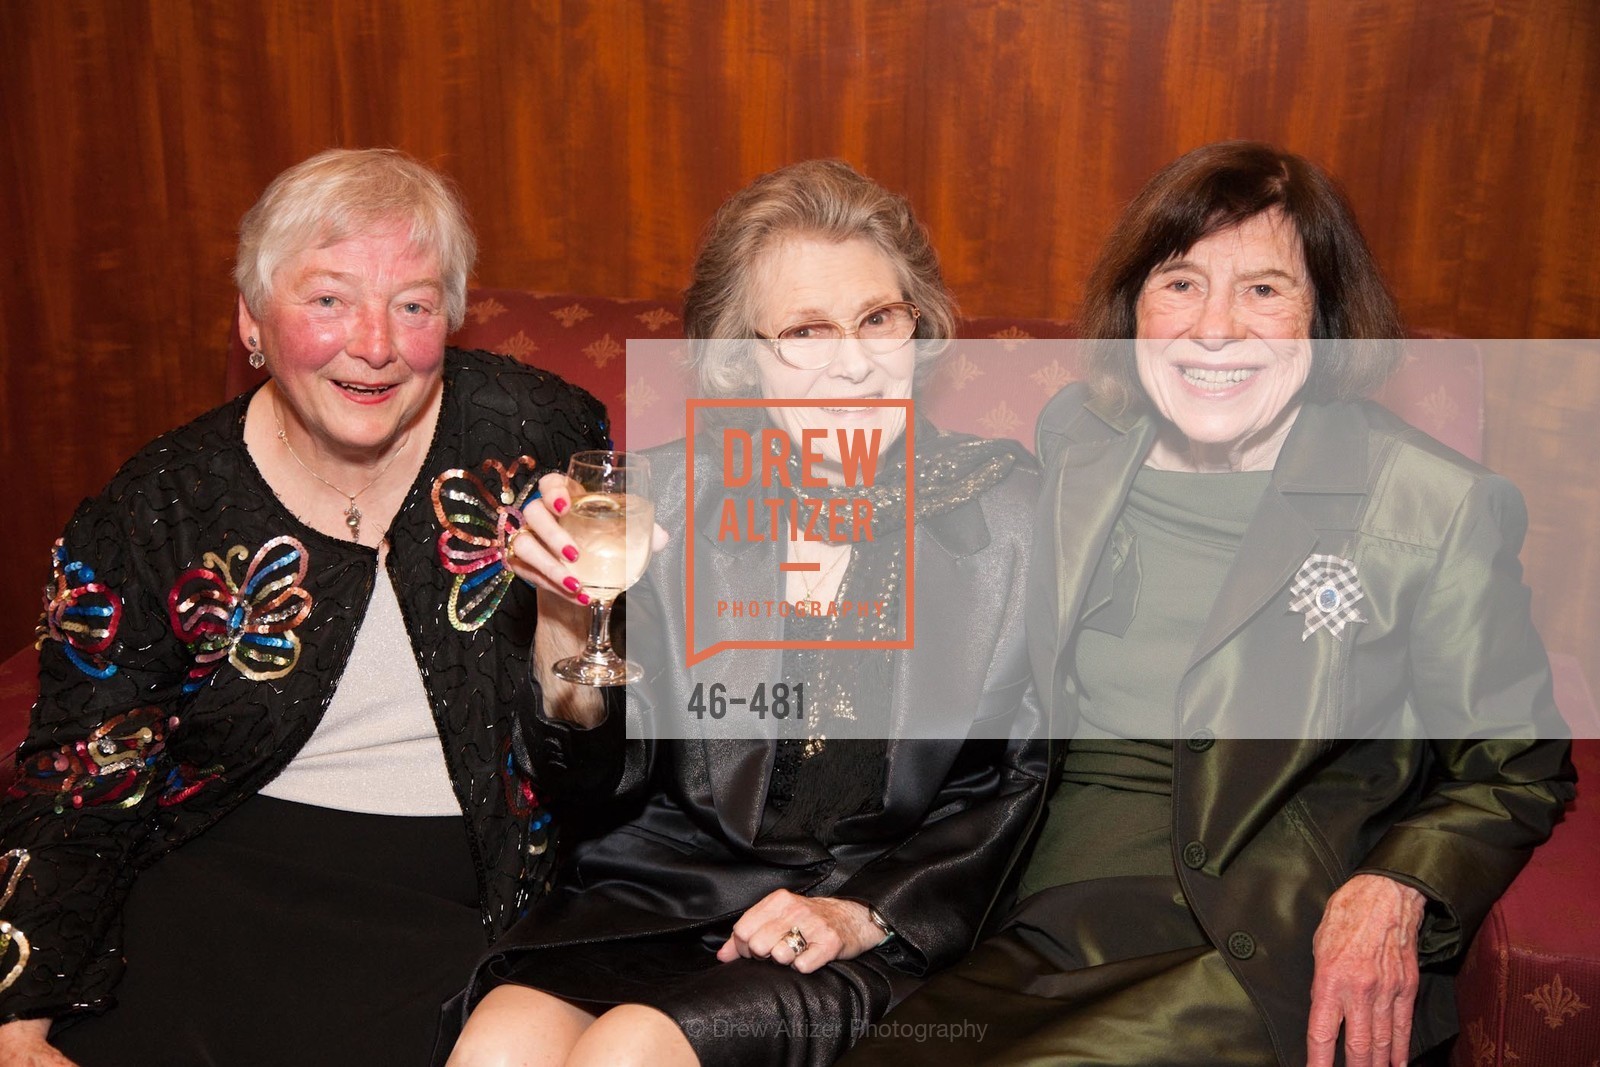 Nancy Anderson, Margaret McKenzie, Marilyn Presten, Photo #46-481